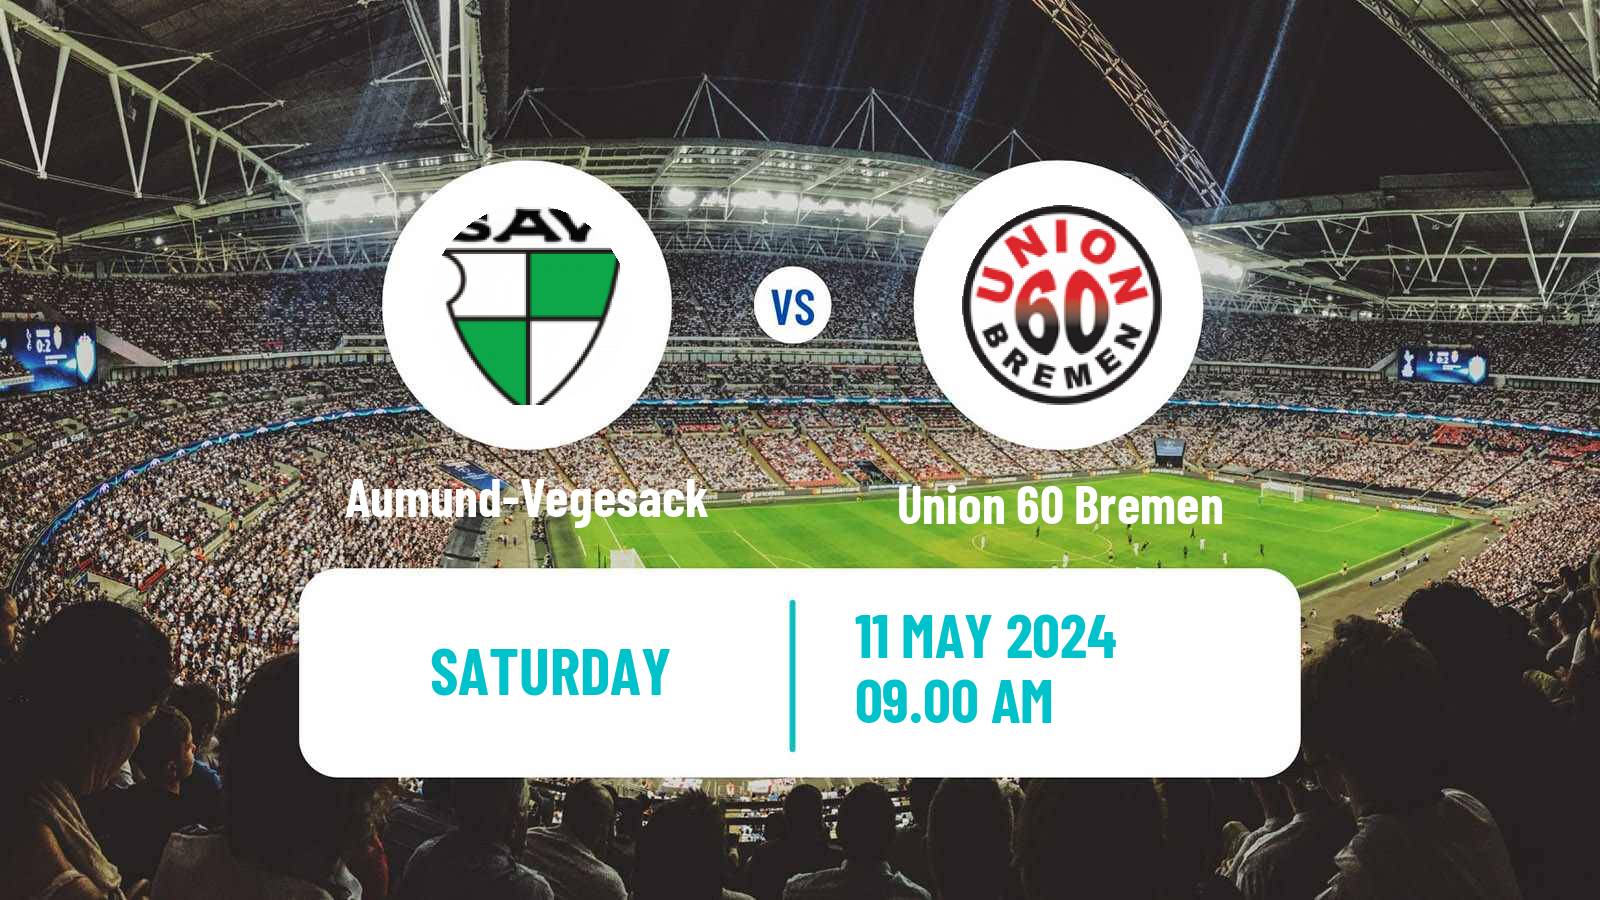 Soccer German Oberliga Bremen Aumund-Vegesack - Union 60 Bremen